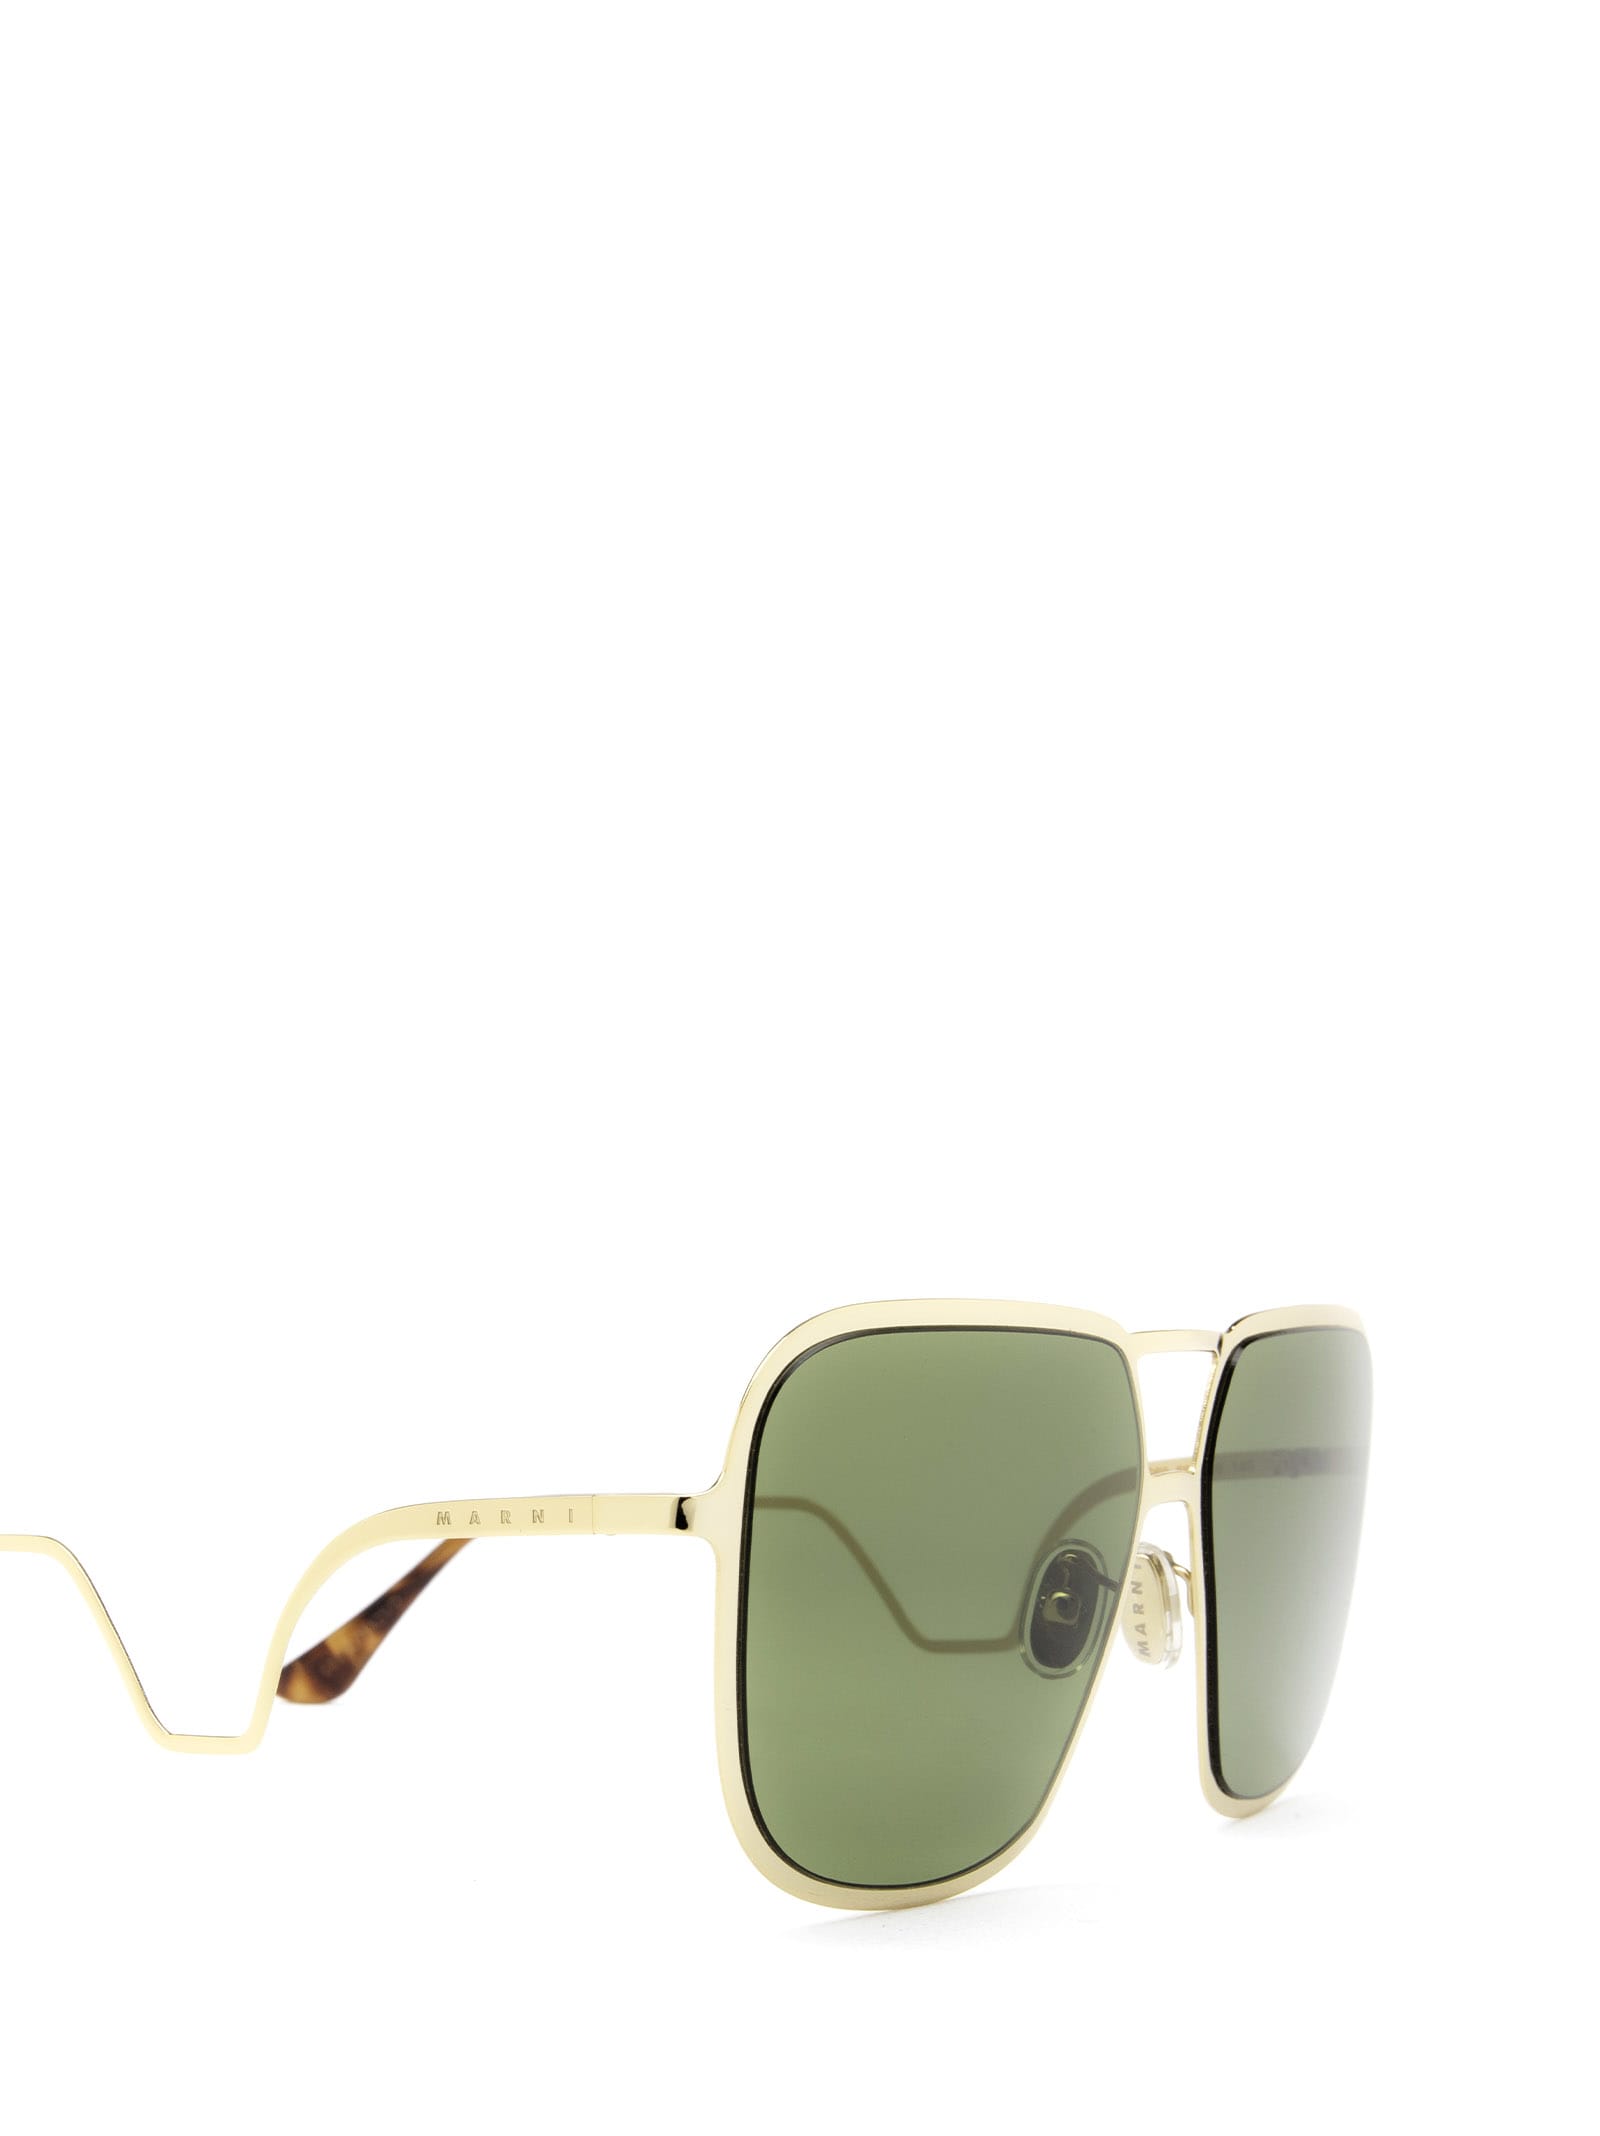 Shop Marni Eyewear Ha Long Bay Green Sunglasses